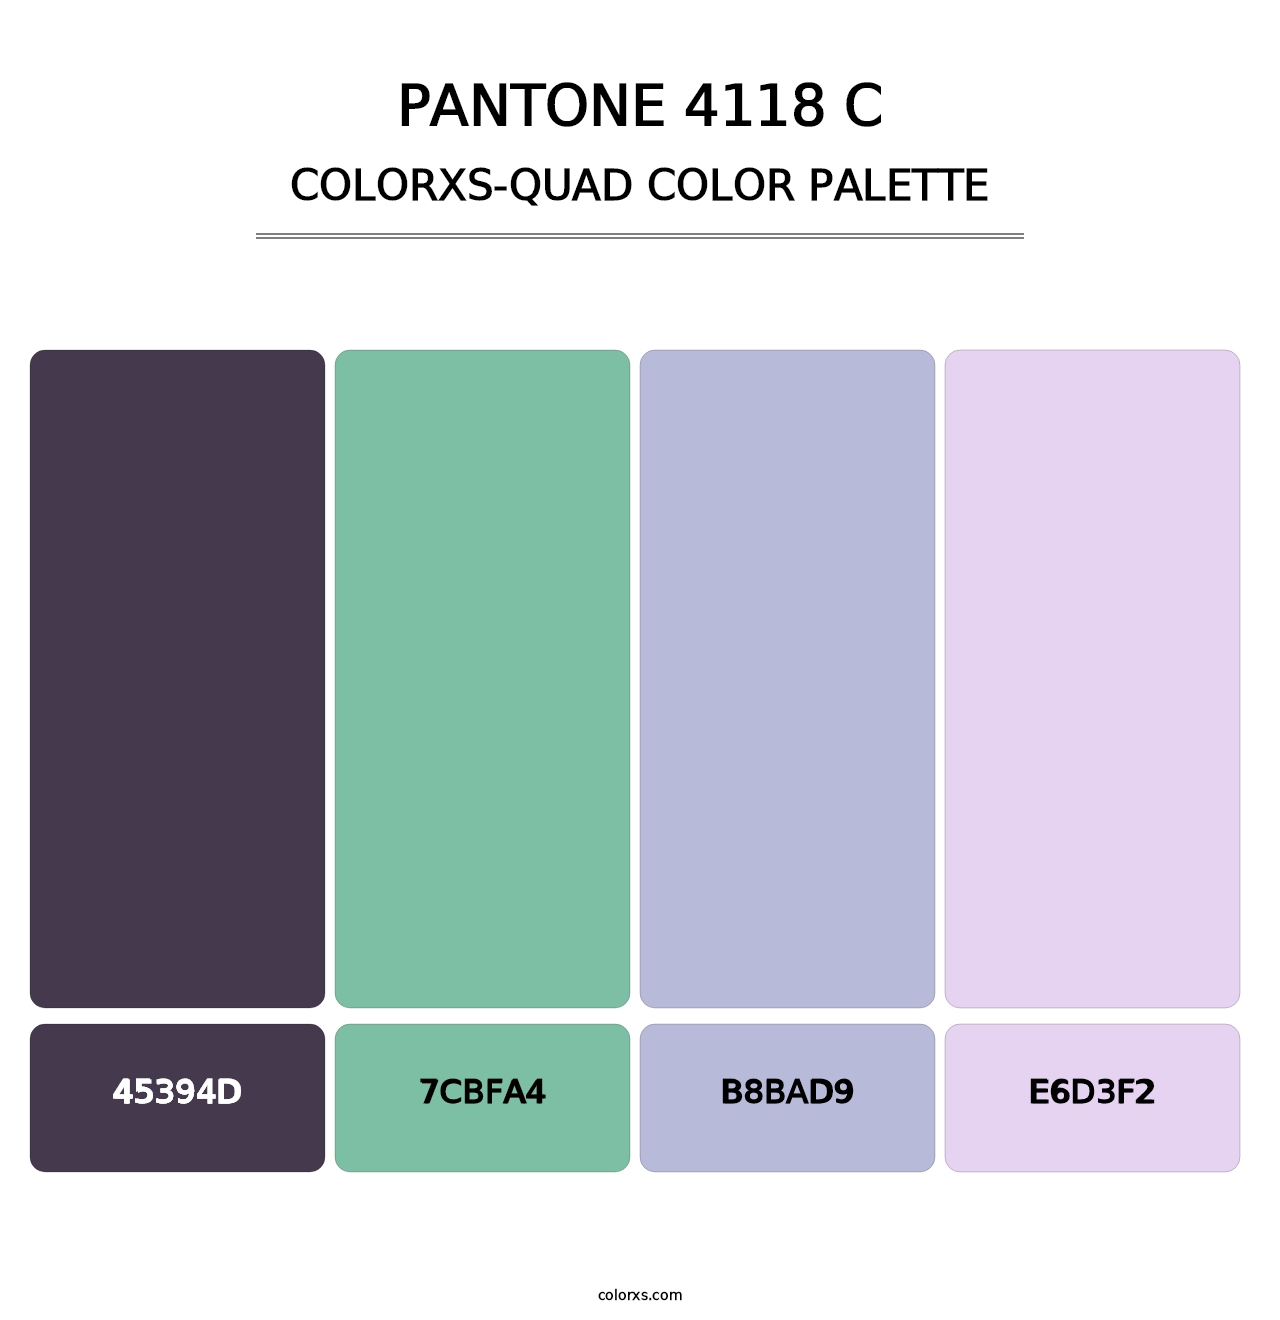 PANTONE 4118 C - Colorxs Quad Palette